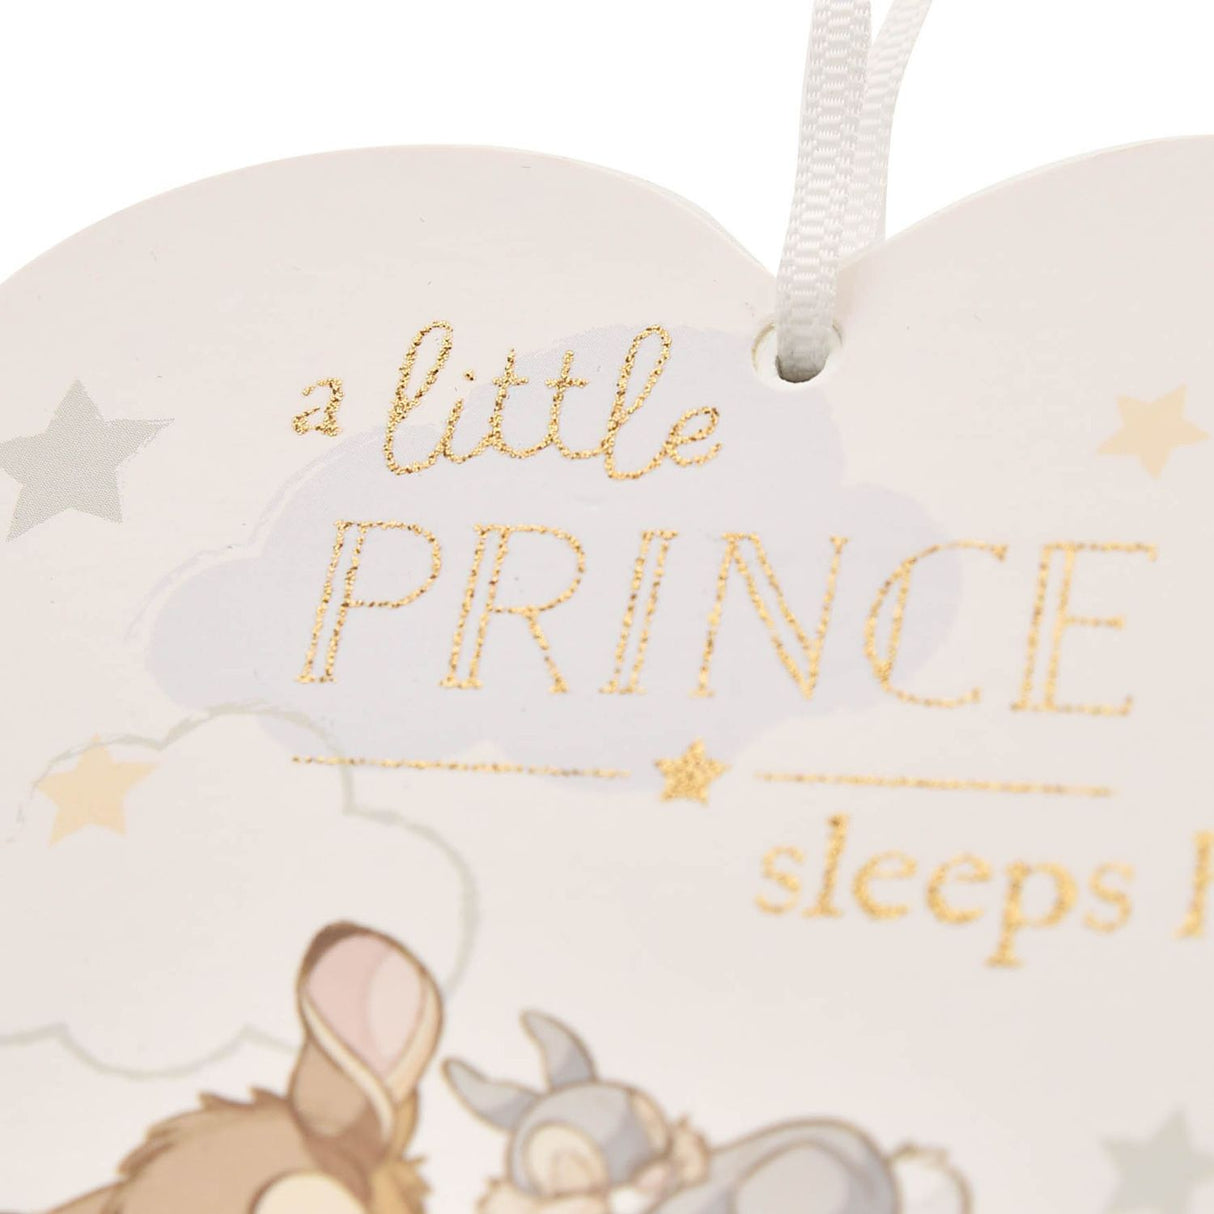 Disney Bambi - Hier schläft ein kleiner Prinz Türhänger in Herzform